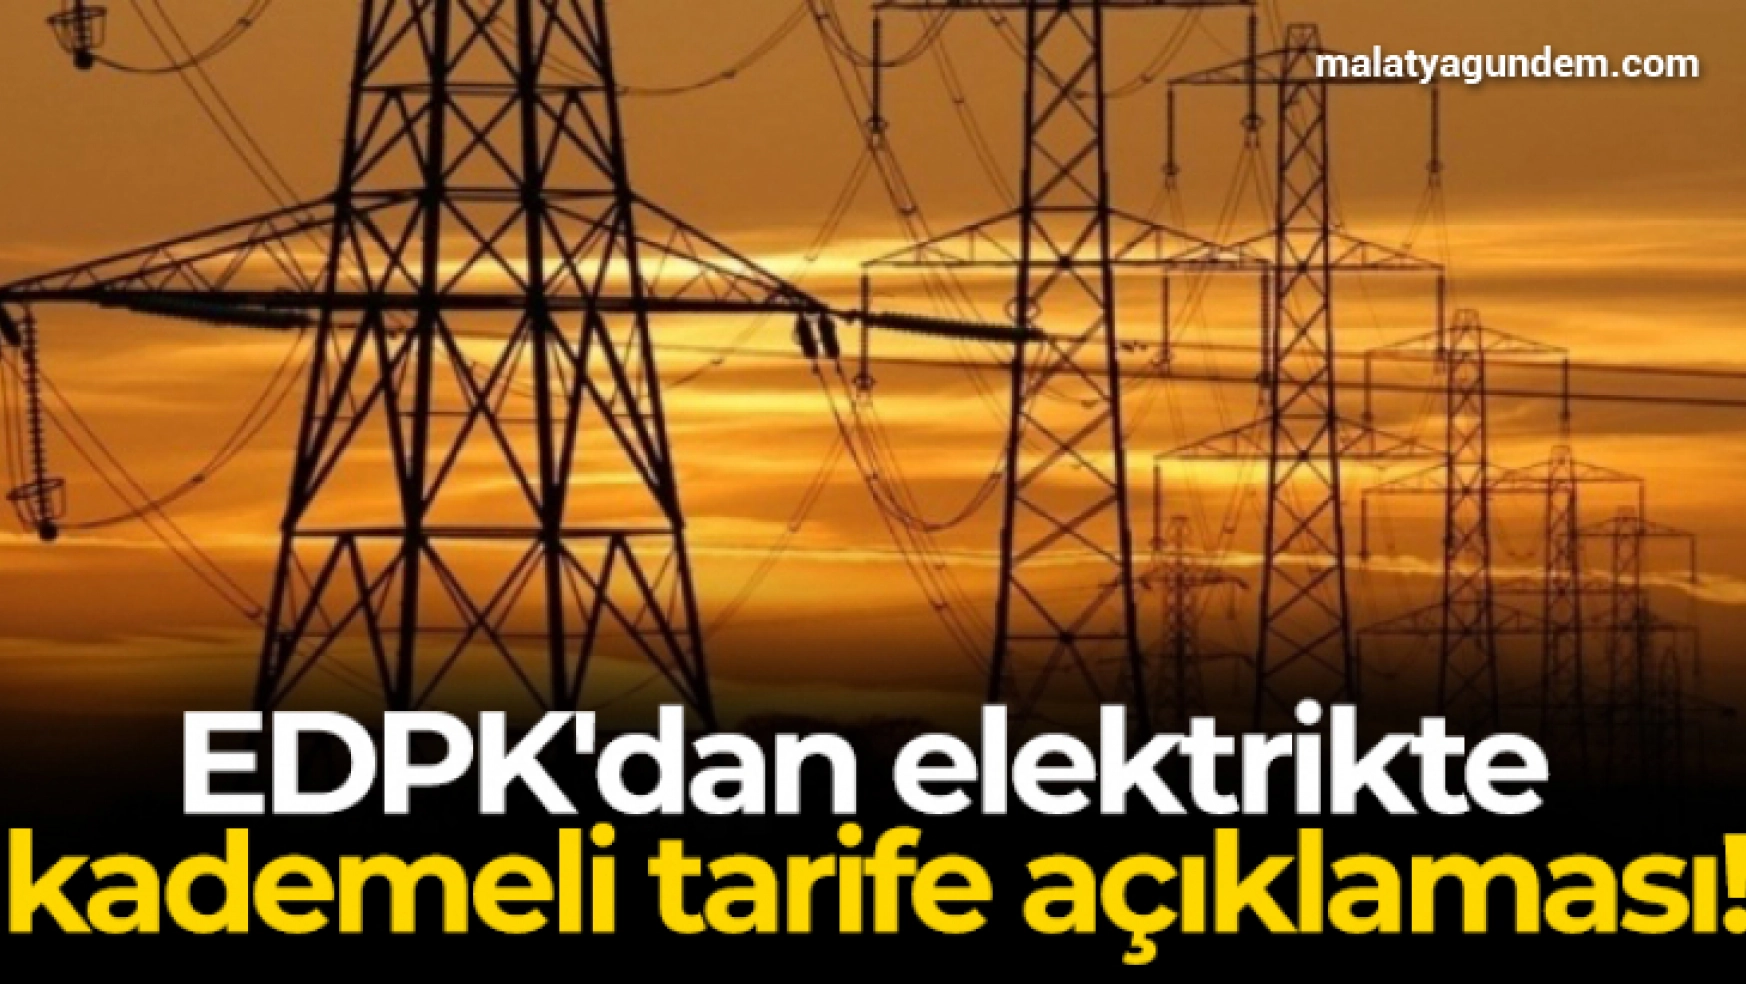 EDPK'dan elektrikte kademeli tarife açıklaması